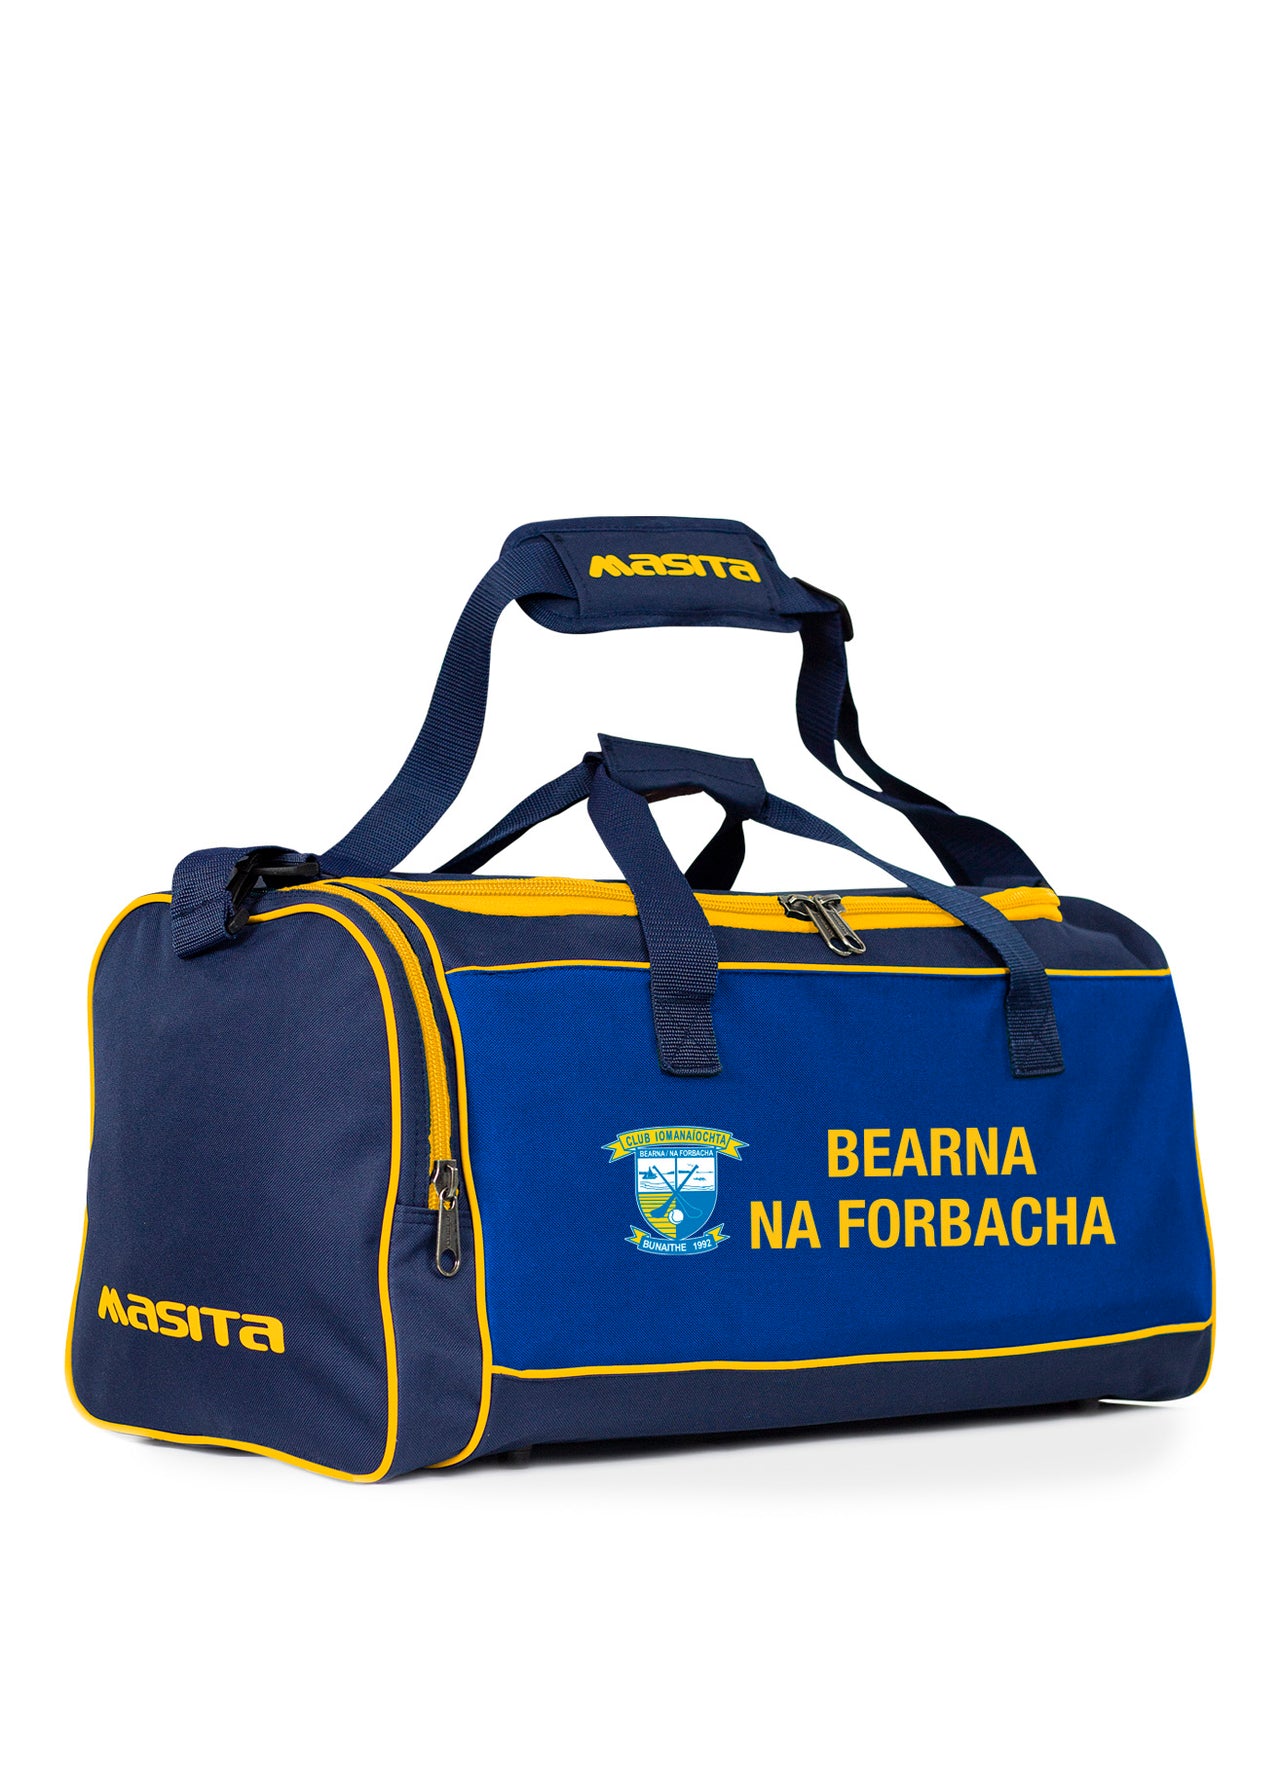 Bearna/ Na Forbacha Forza Bag Medium